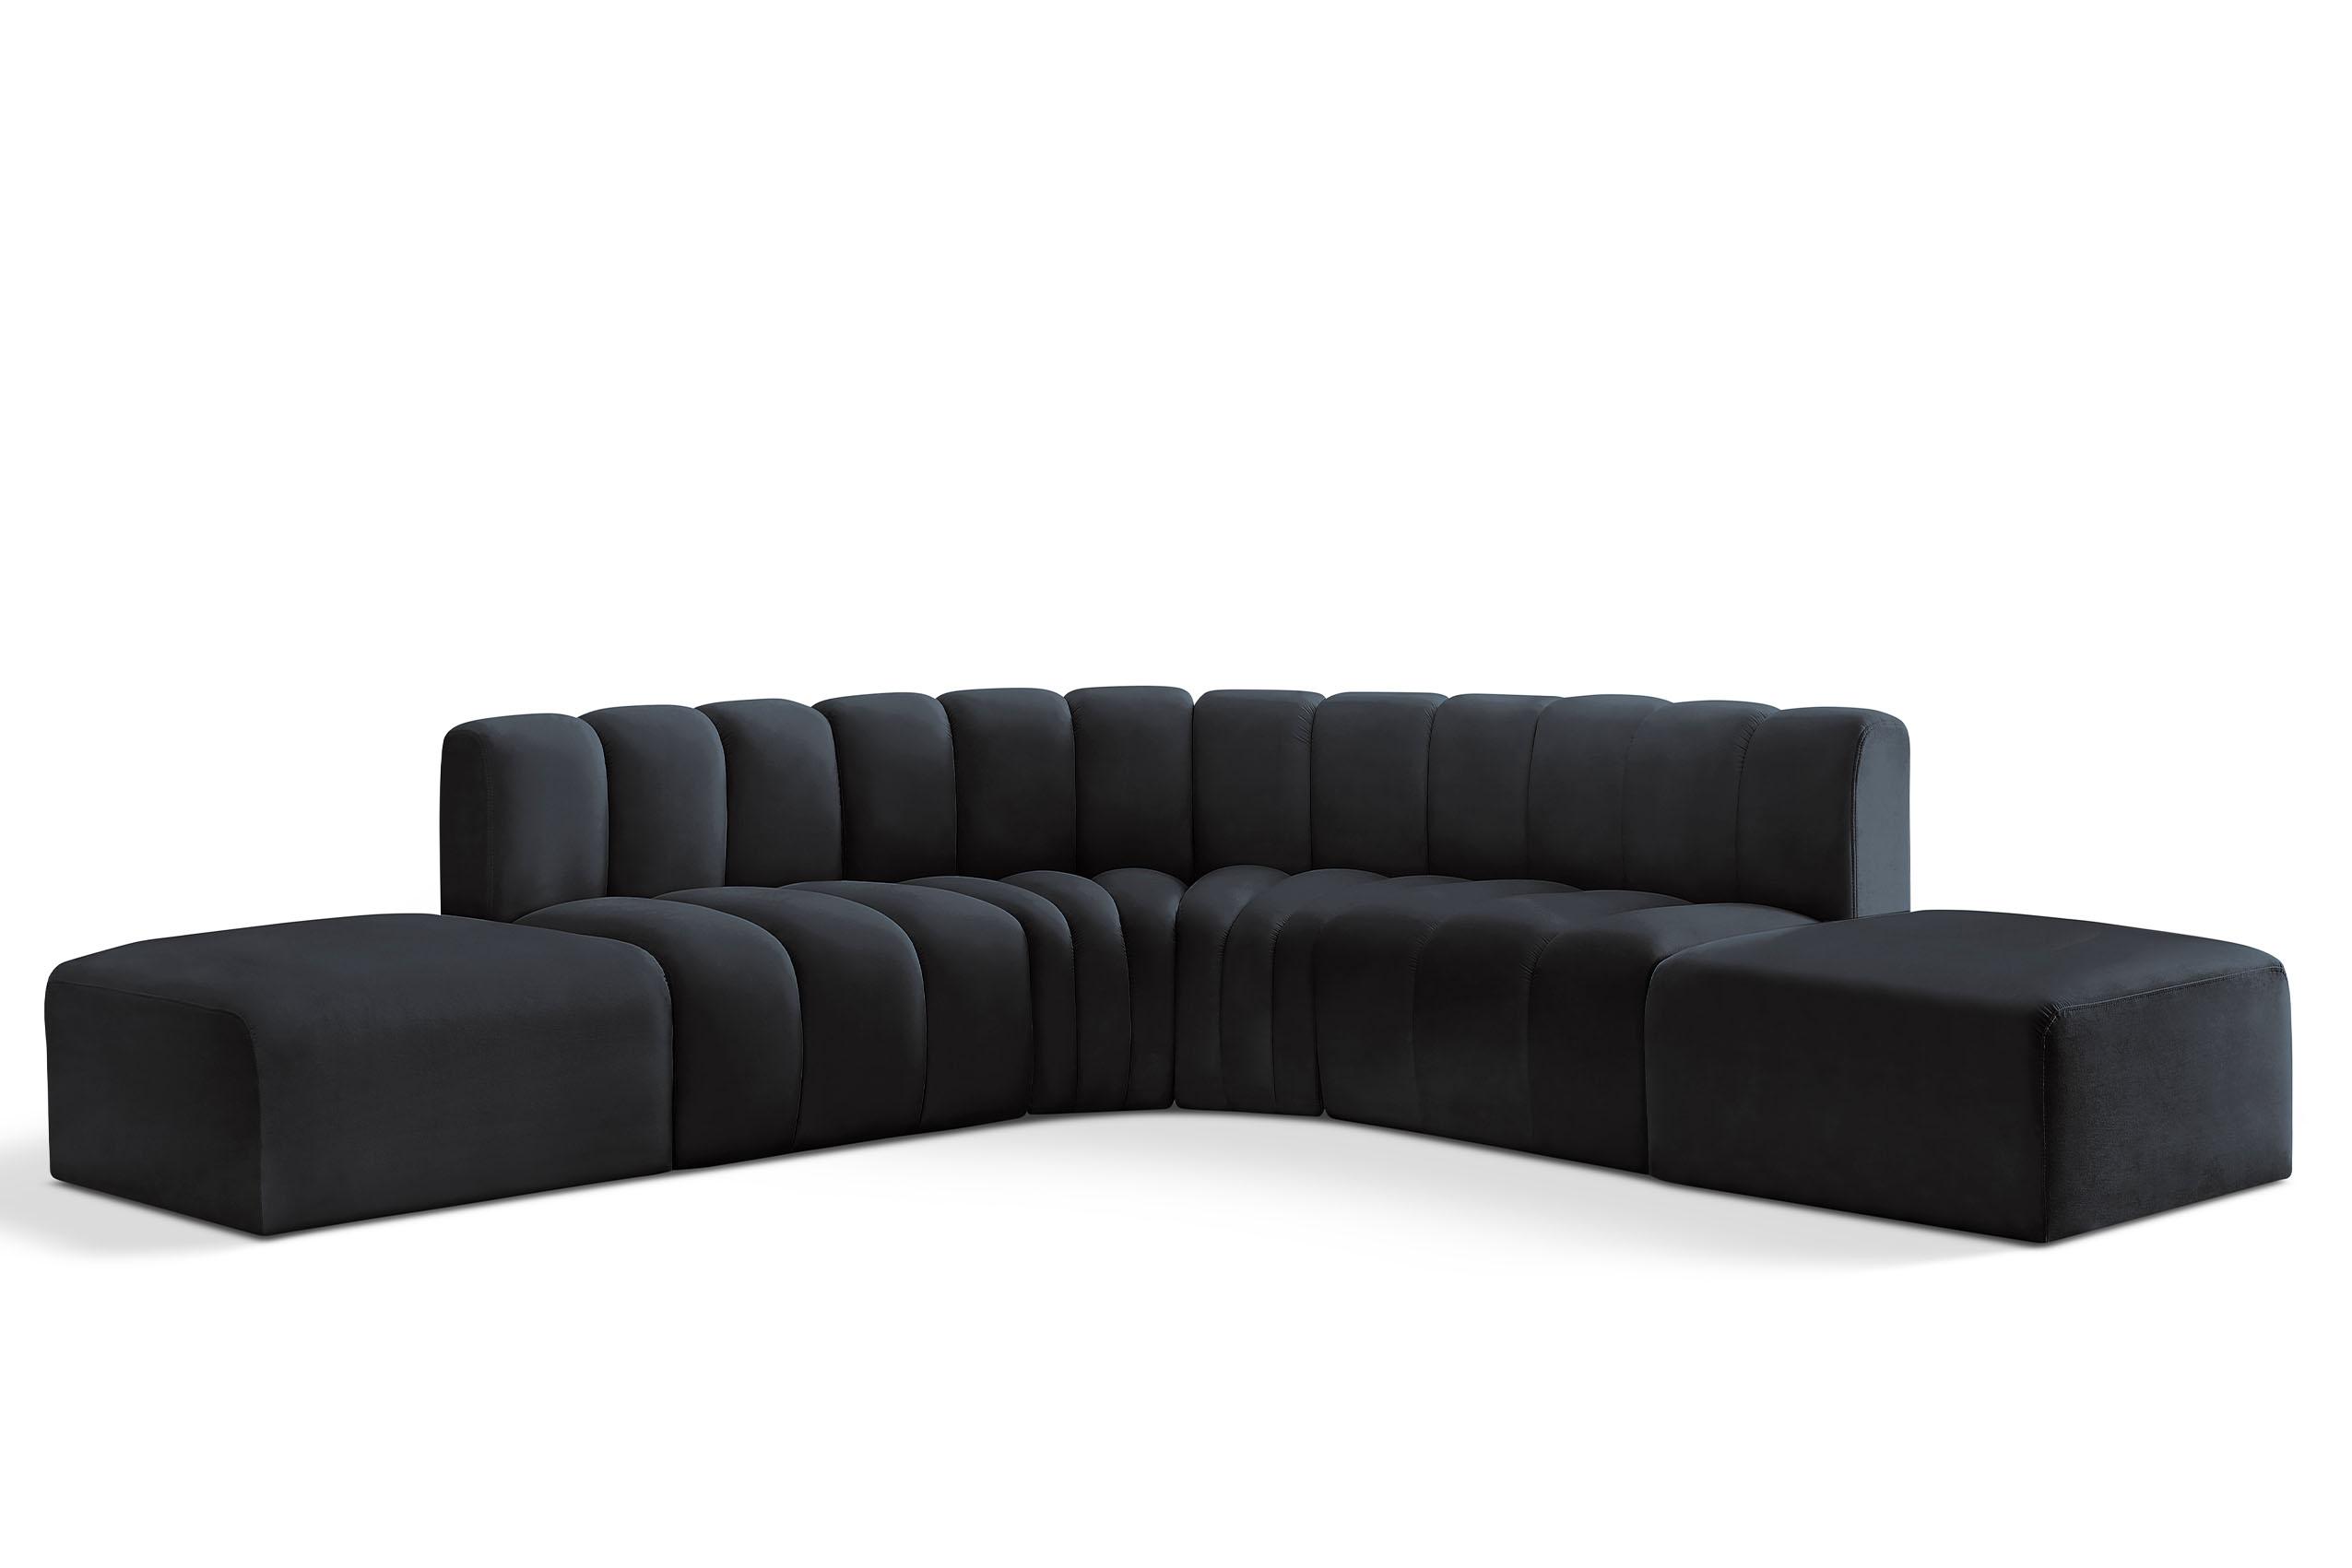 Contemporary, Modern Modular Sectional Sofa ARC 103Black-S6C 103Black-S6C in Black Velvet